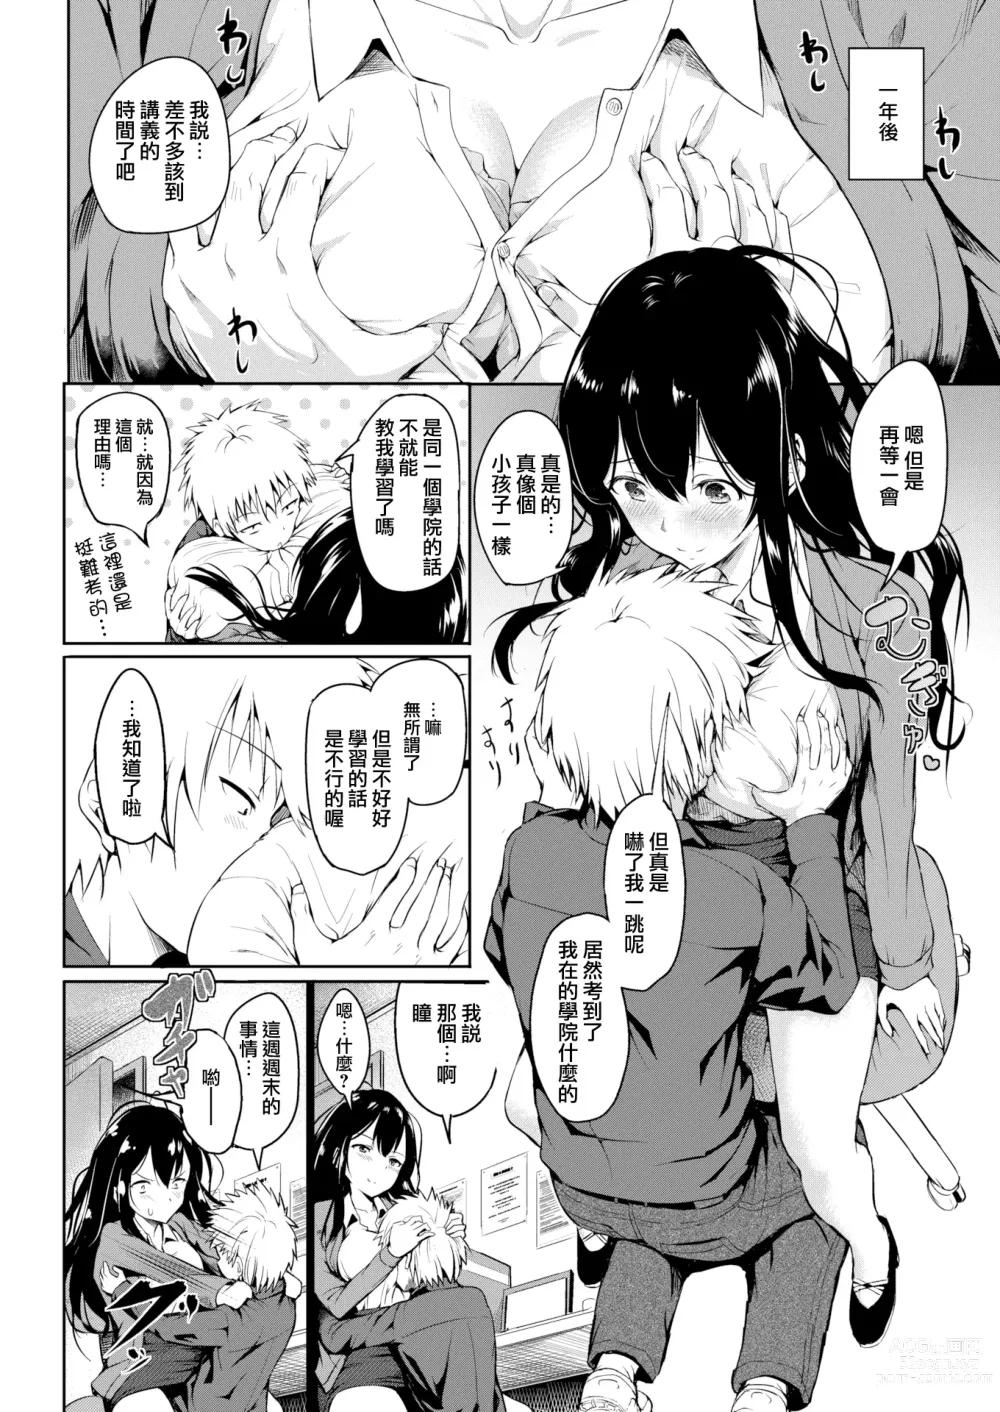 Page 2 of manga 劣情モノポリー